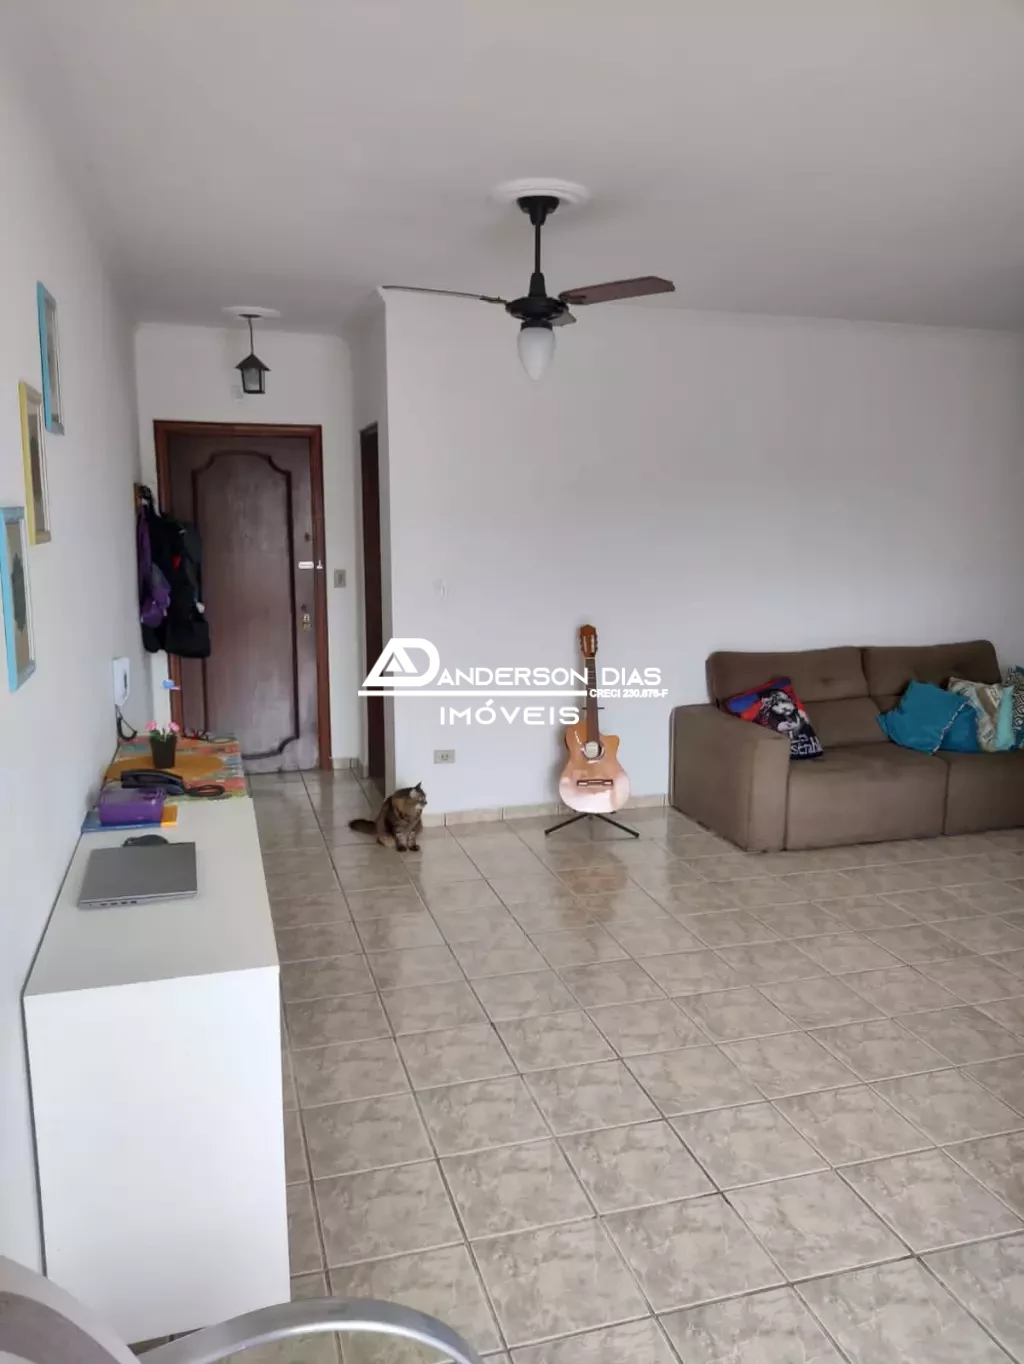 Apartamento com 3 dormitórios sendo 1 suíte á venda, 92m² por R$ 360.000 - Martim de Sá- Caraguatatuba/SP